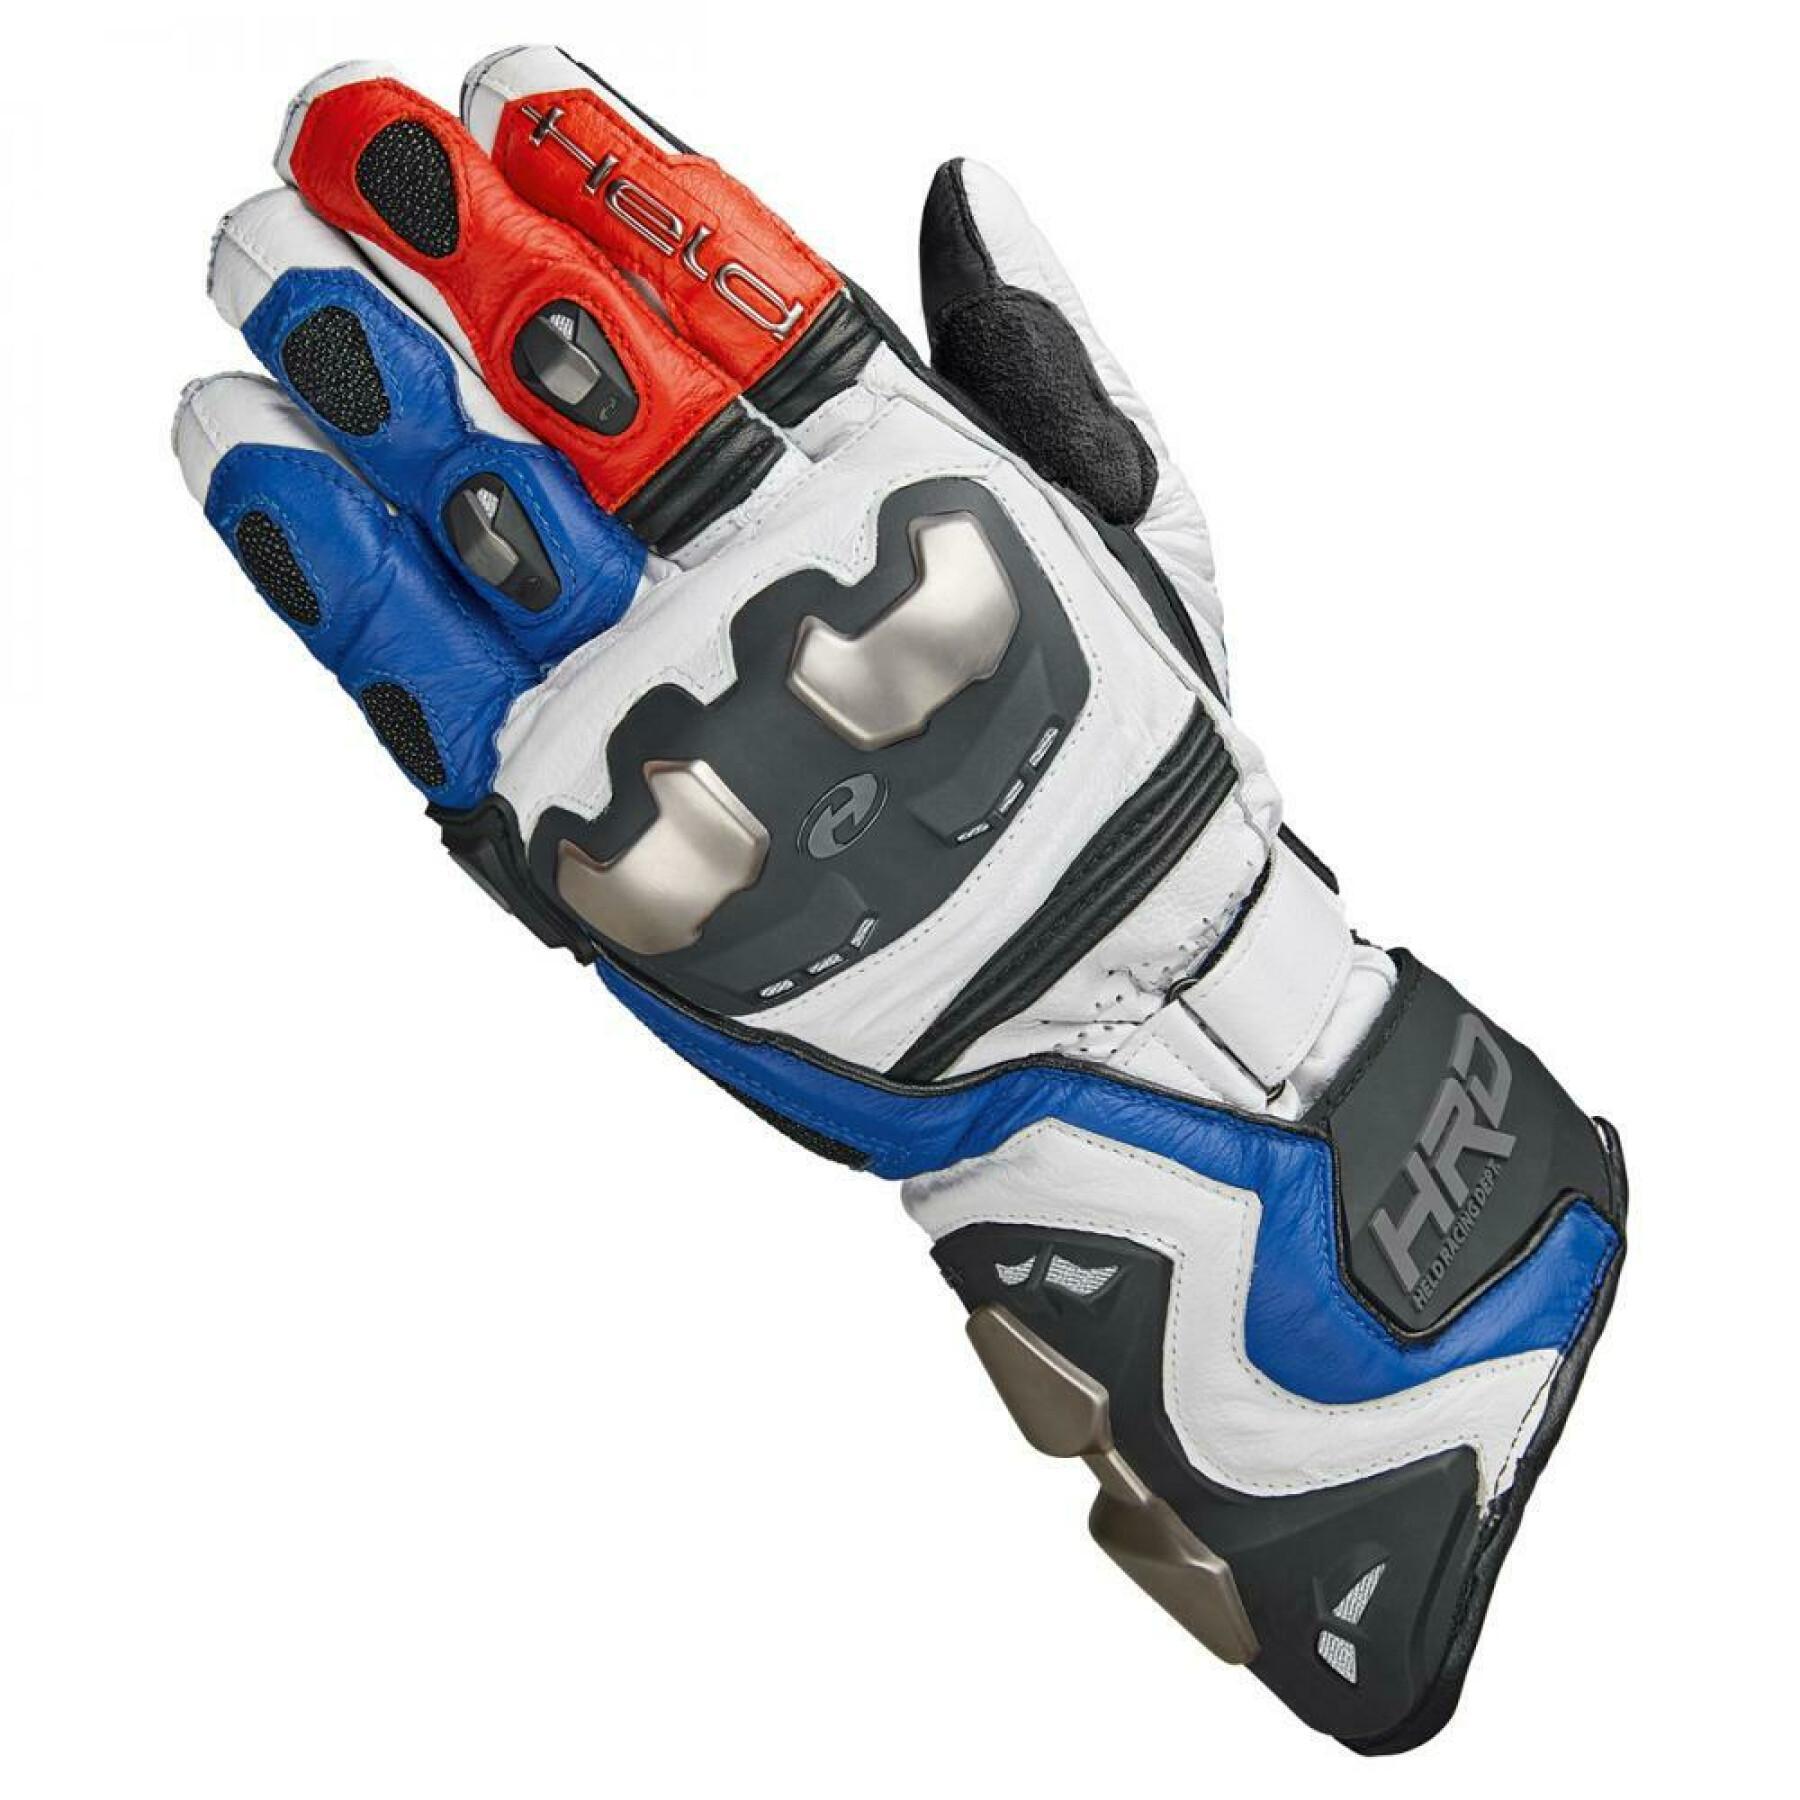 Motorrad-Racing-Handschuhe Held titan rr